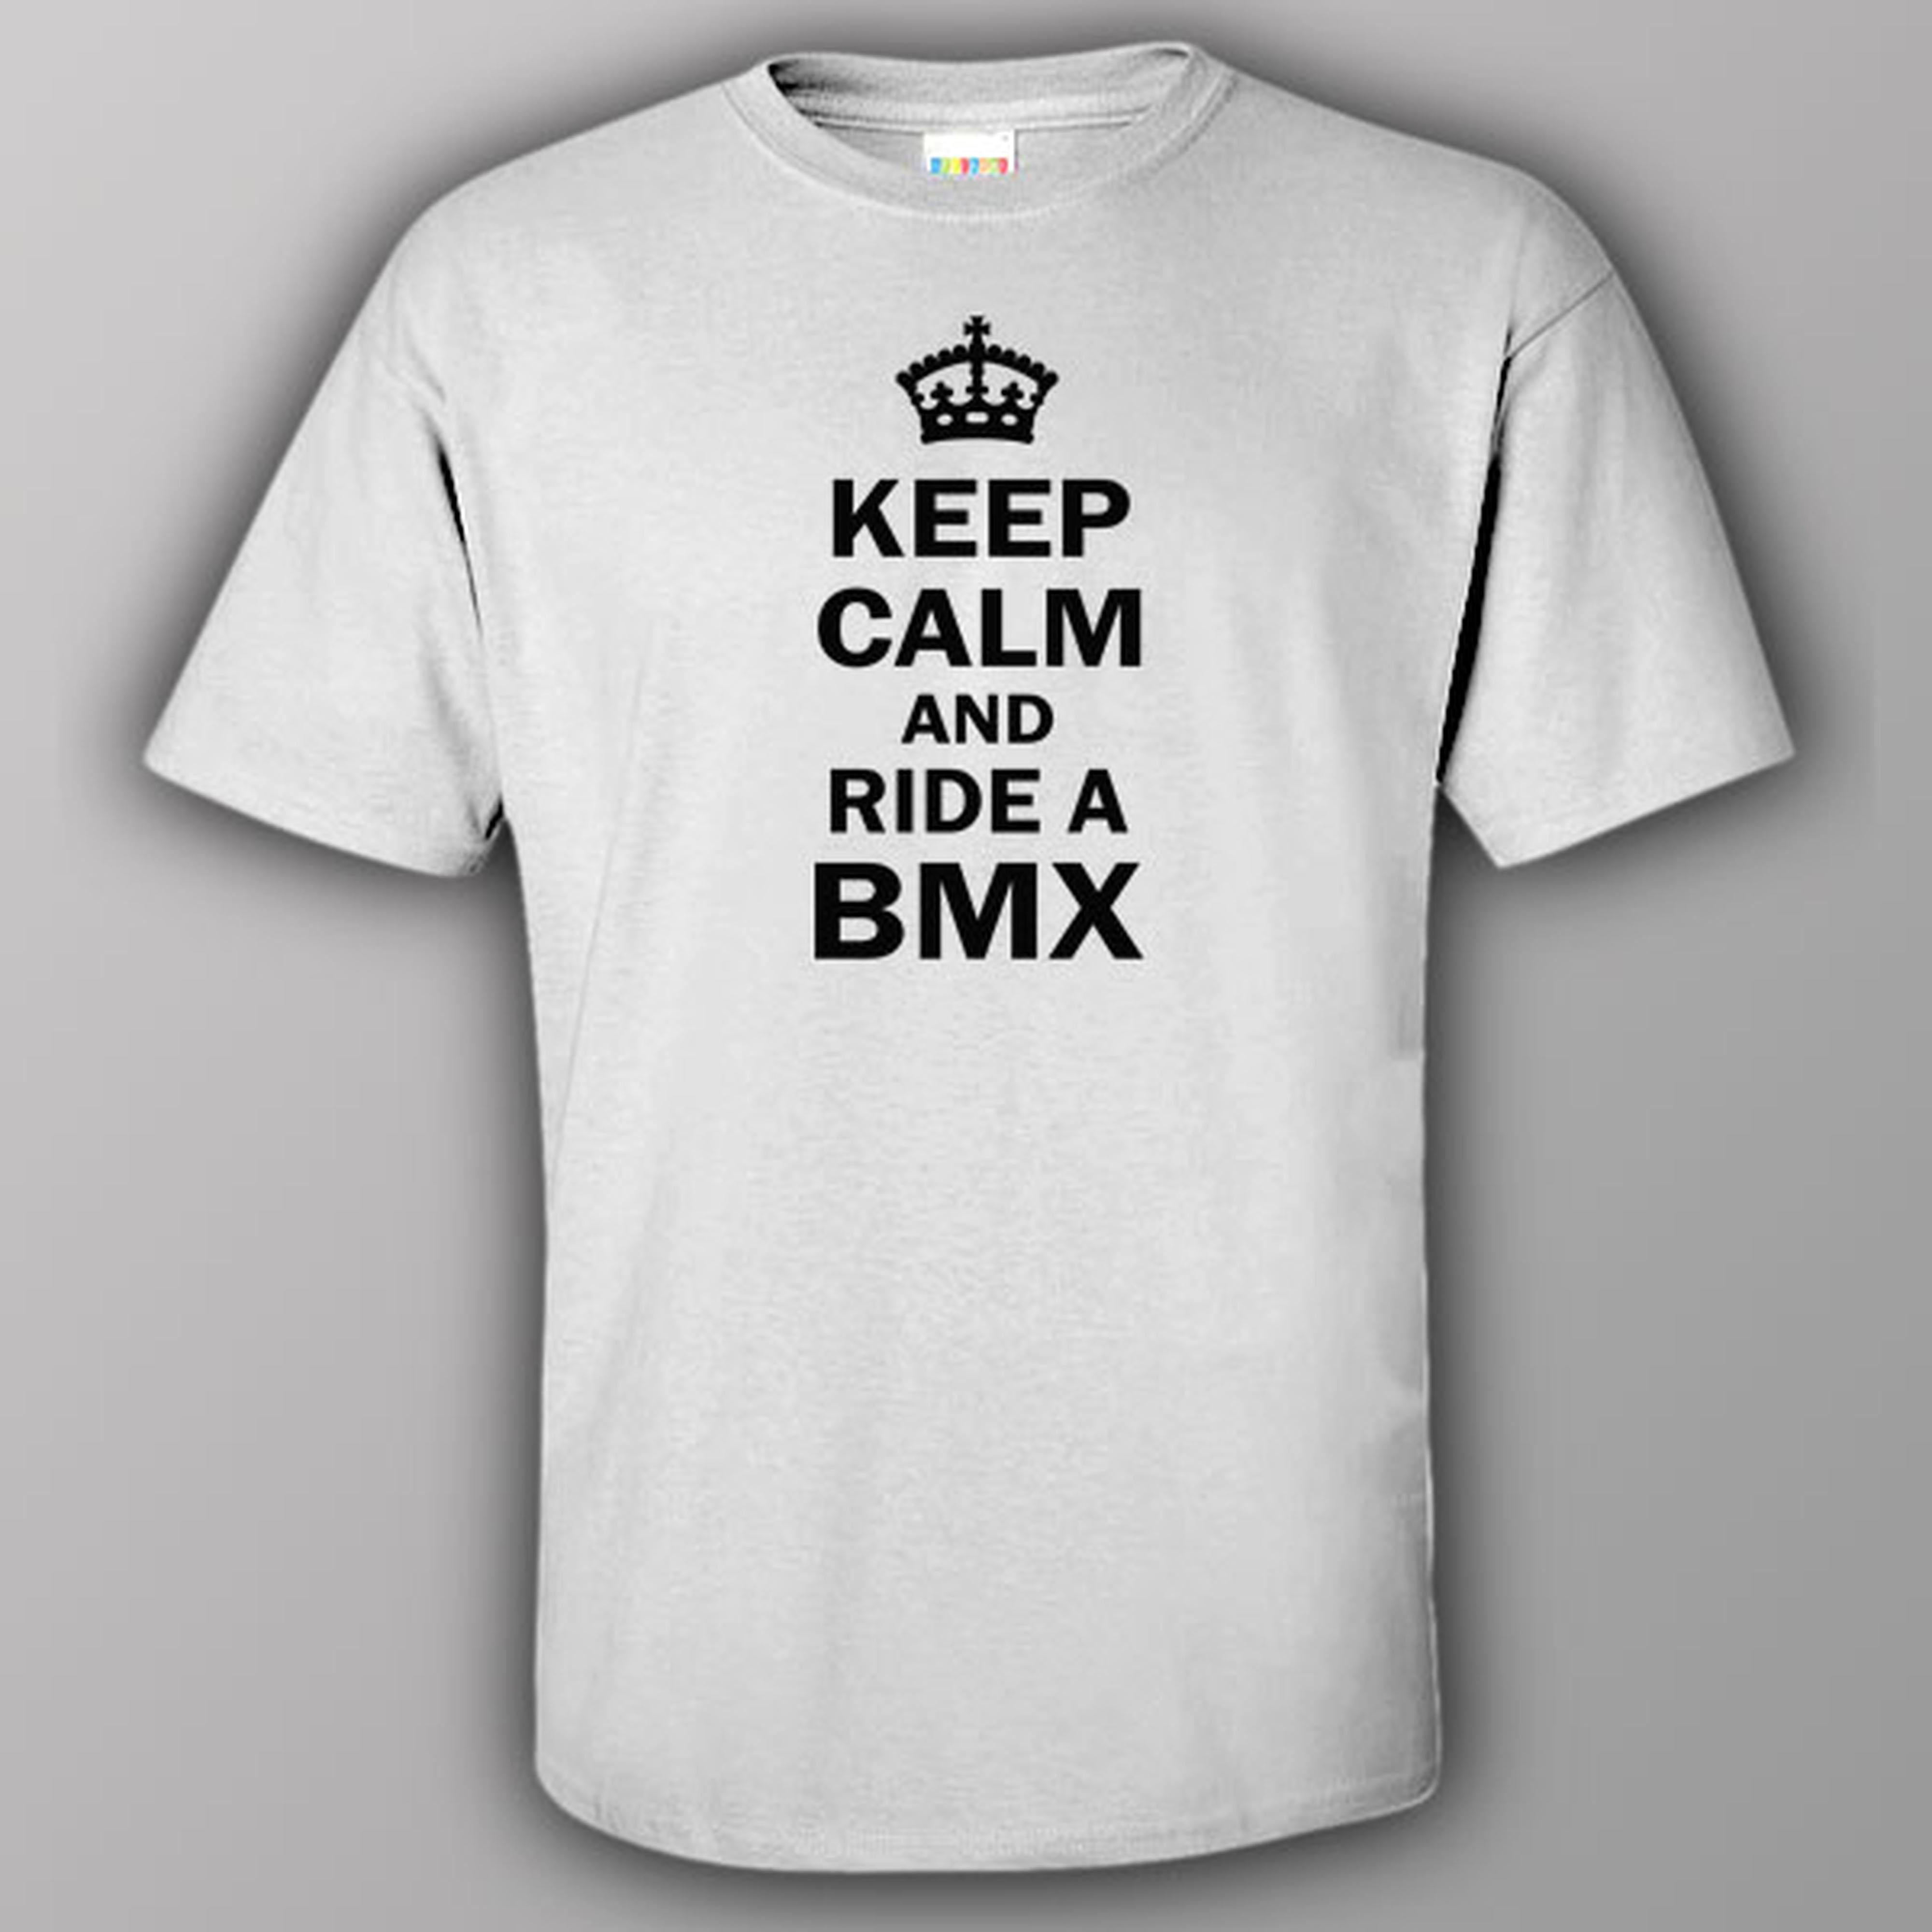 Keep calm and ride BMX - T-shirt